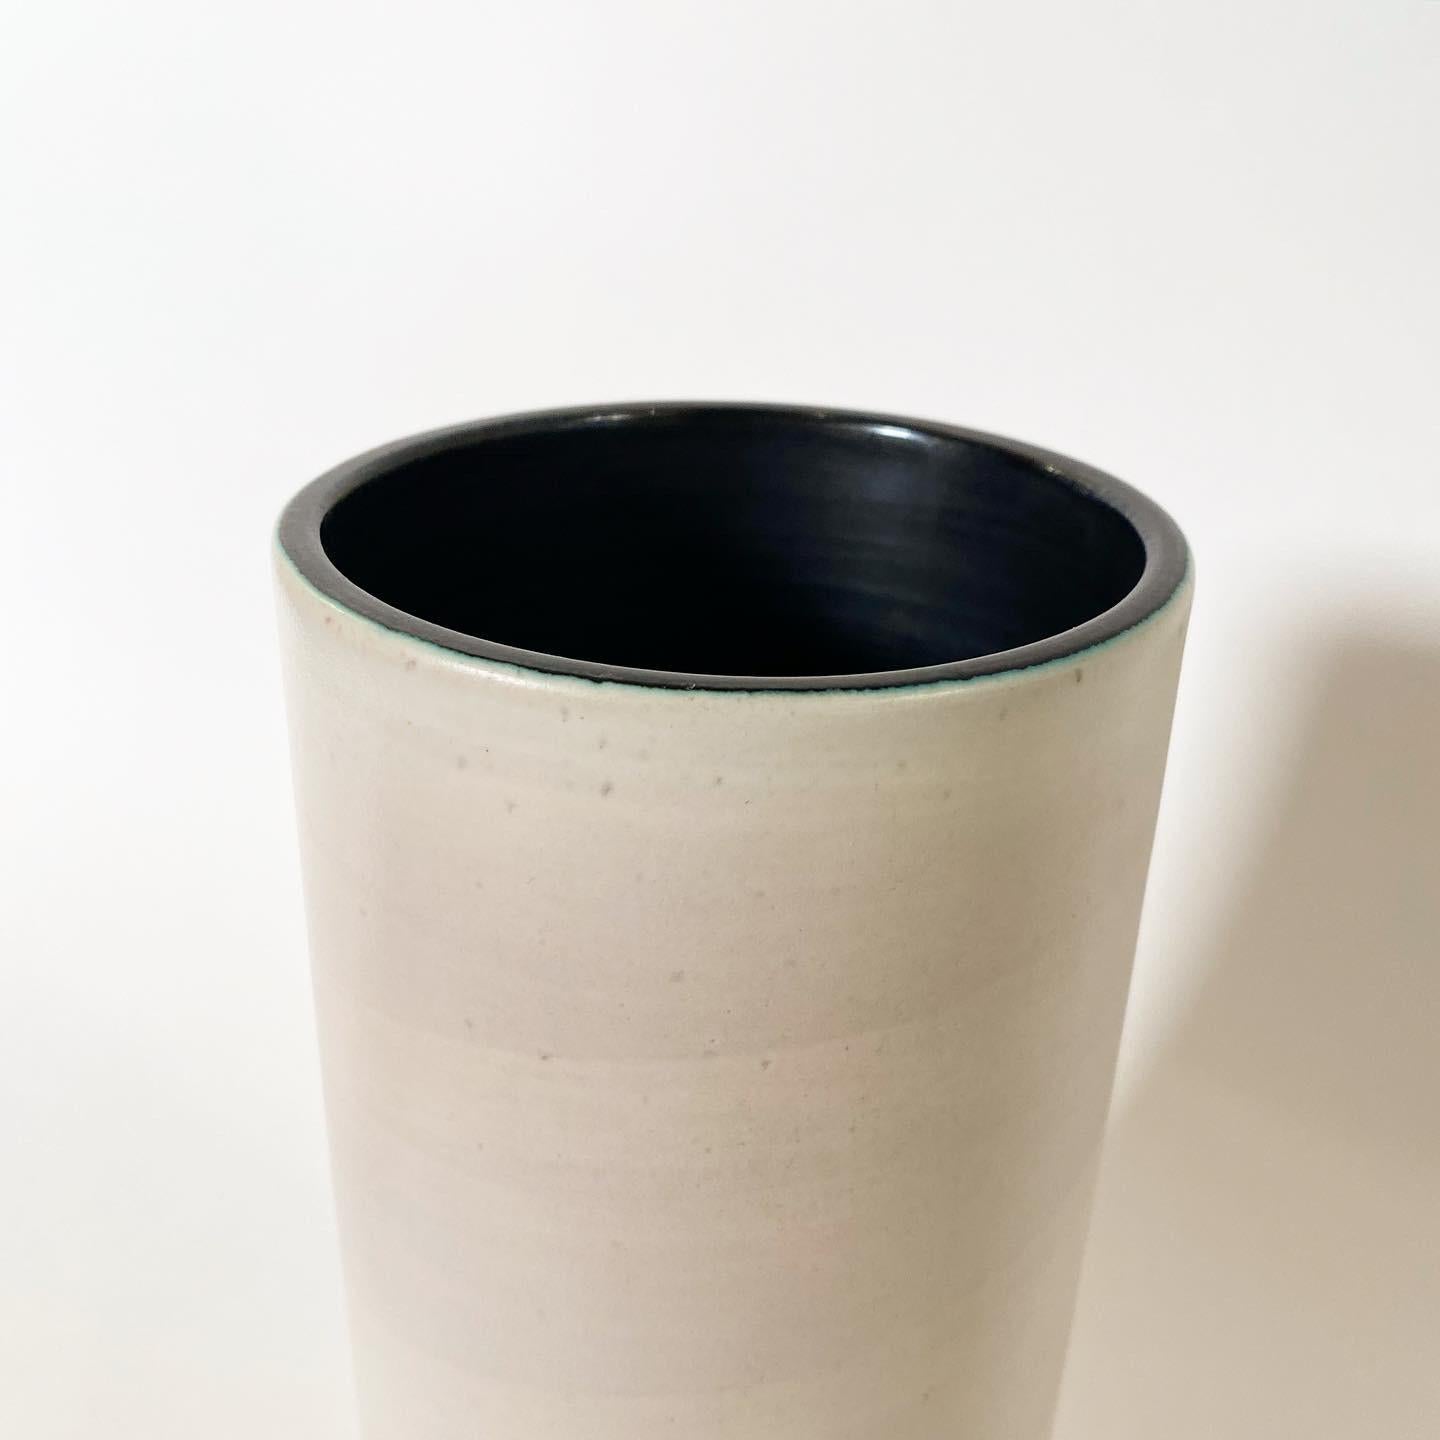 Vase Cylindre en céramique émaillée blanc enrubanné, intérieur noir, circa 1955.
Signé 